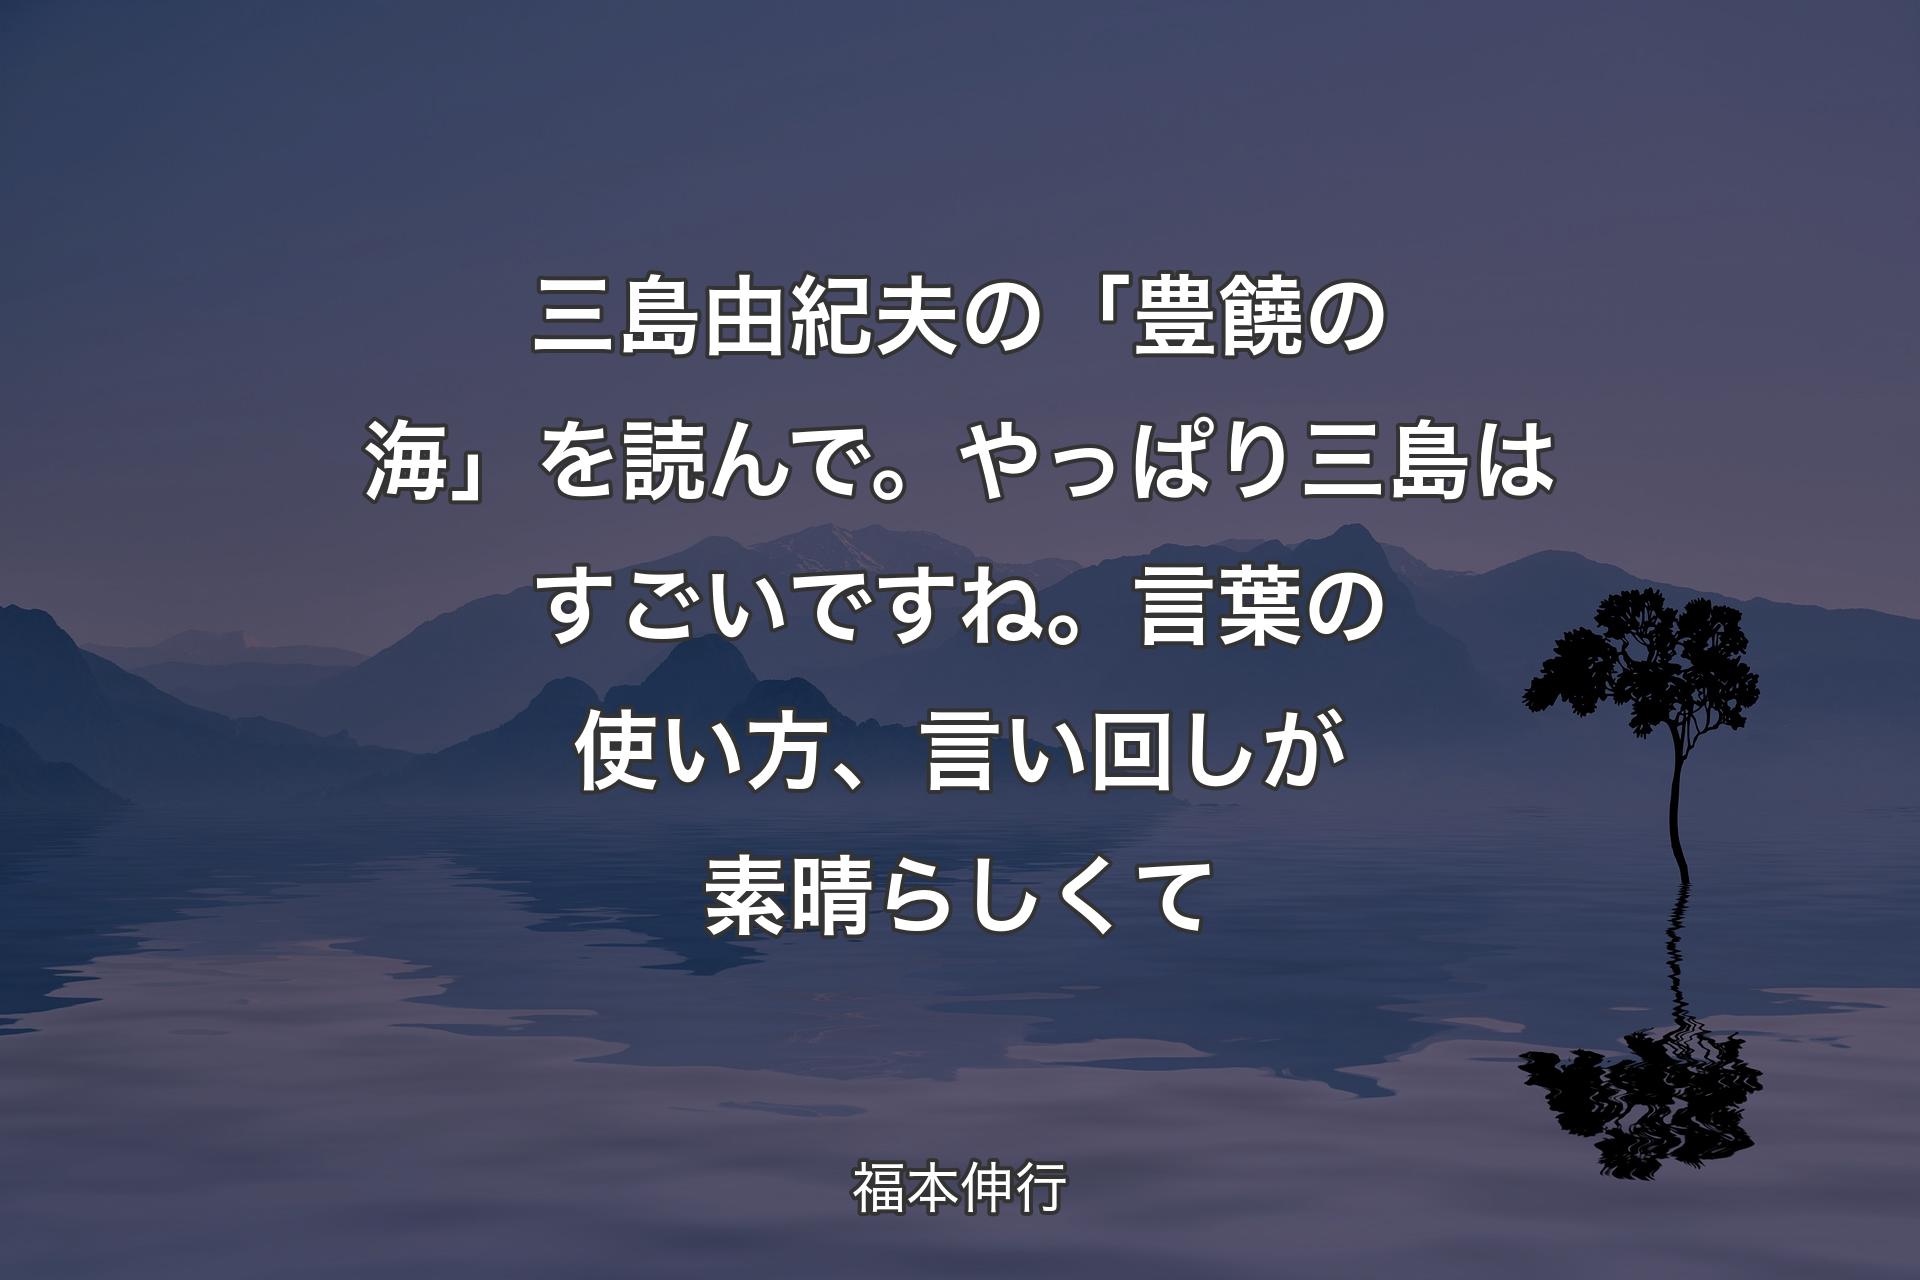 【背景4】三島由紀夫の「豊饒の海」を読んで。やっぱり三島はすごいですね。言葉の使い方、言い回しが素晴らしくて - 福本伸行